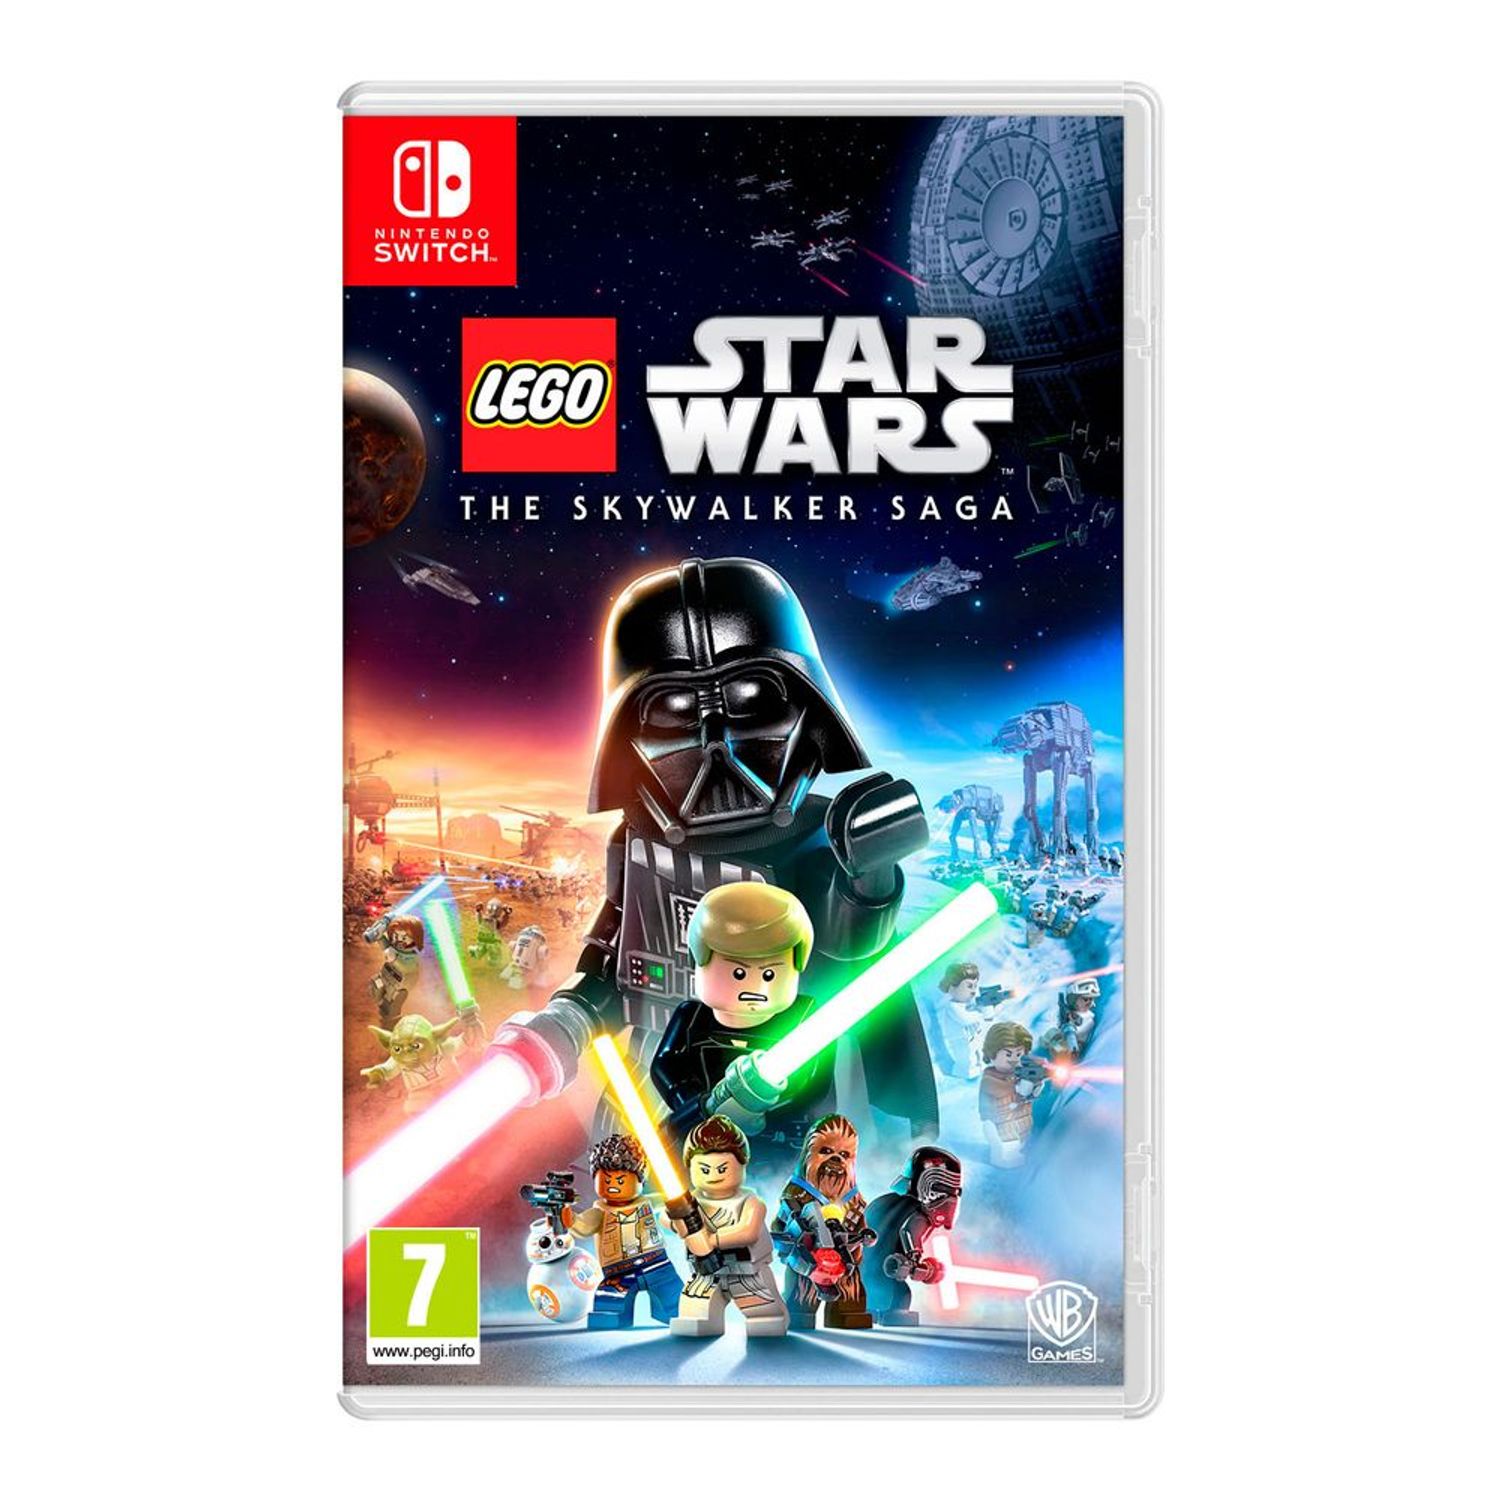 LEGO Star Wars La saga Skywalker confirma sus requisitos